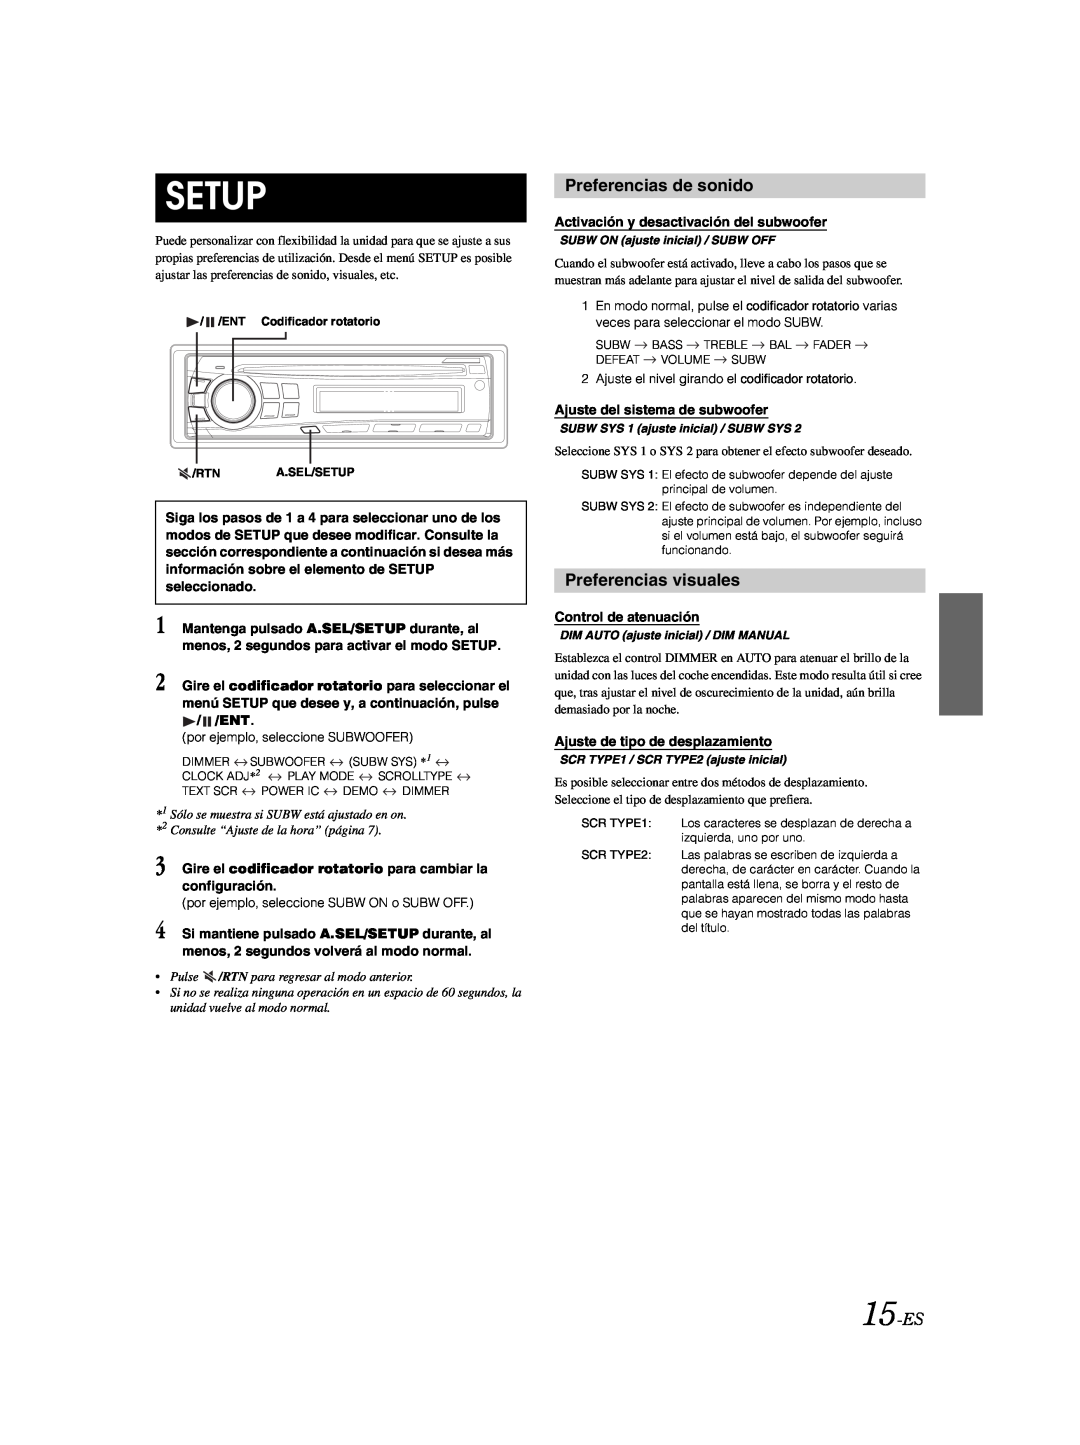 Alpine CDE-9873 owner manual Preferencias de sonido, Preferencias visuales, 15-ES, Setup 